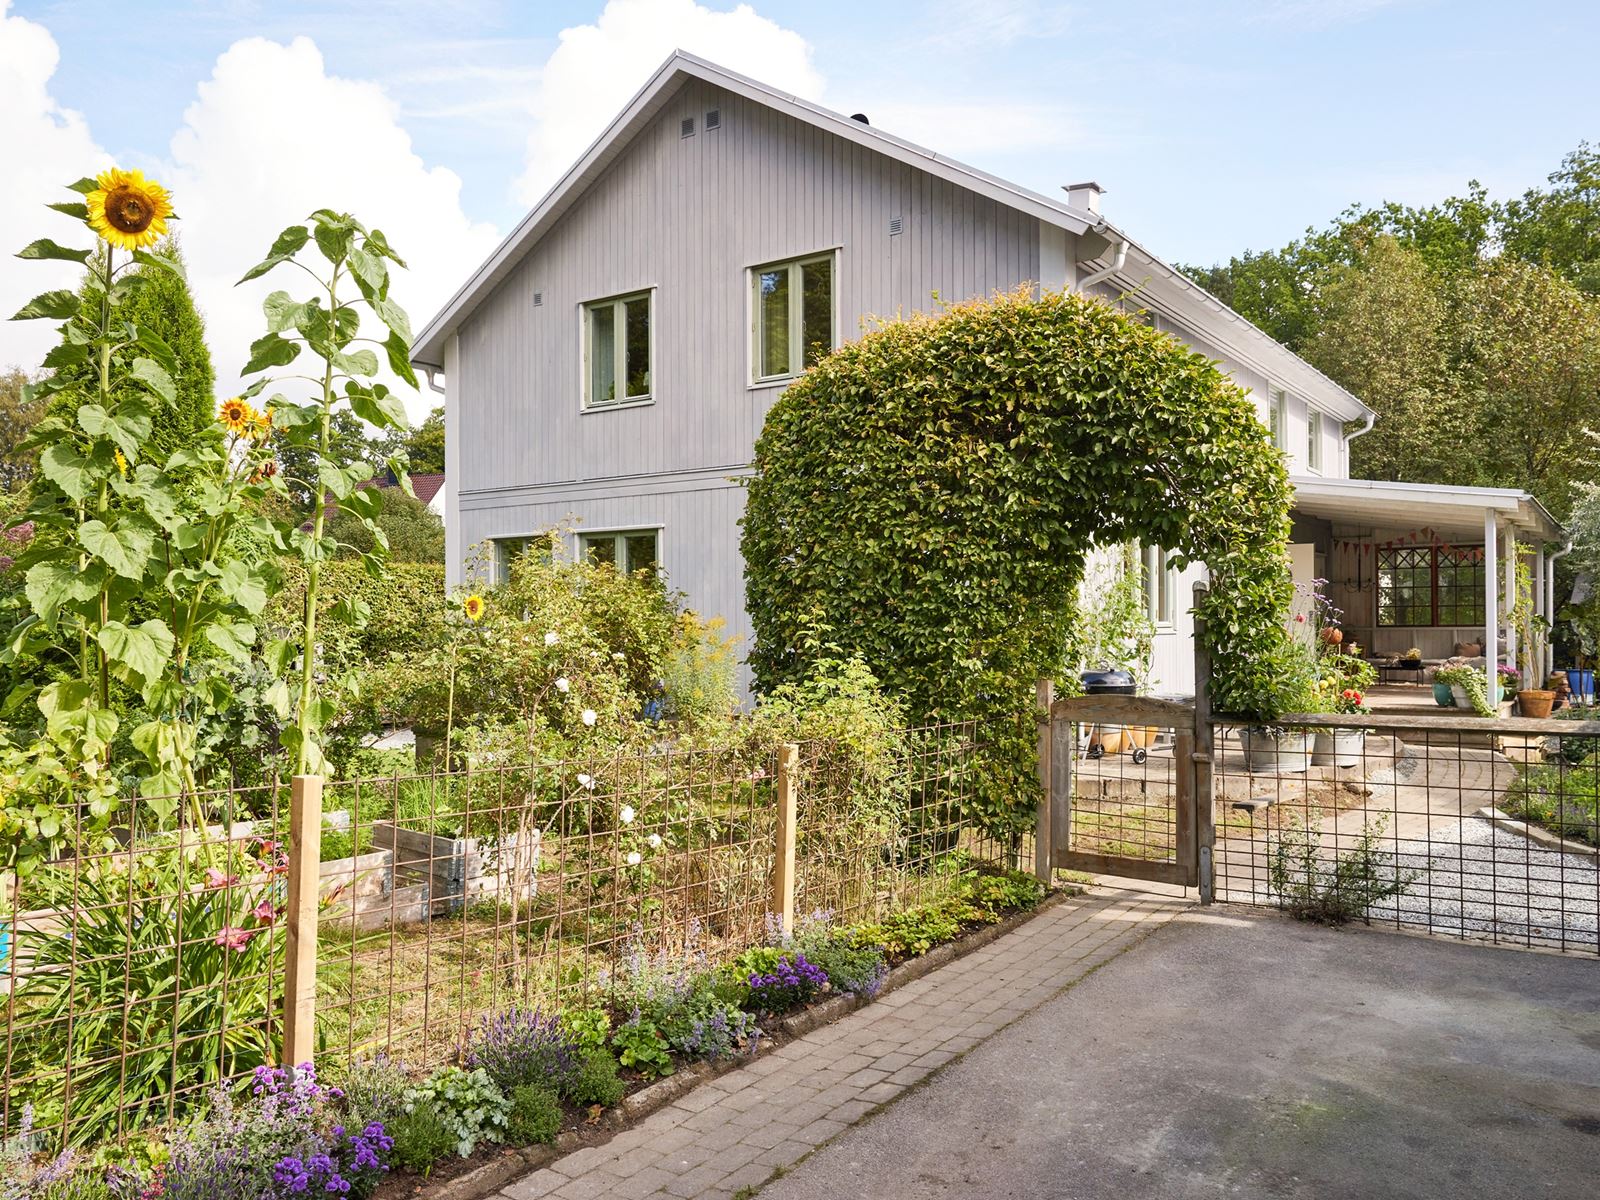 Välkomna till Bråta Ängsväg 6 - en karaktärsfull villa med stort garage. Bråta ängsväg 6 - Bjurfors